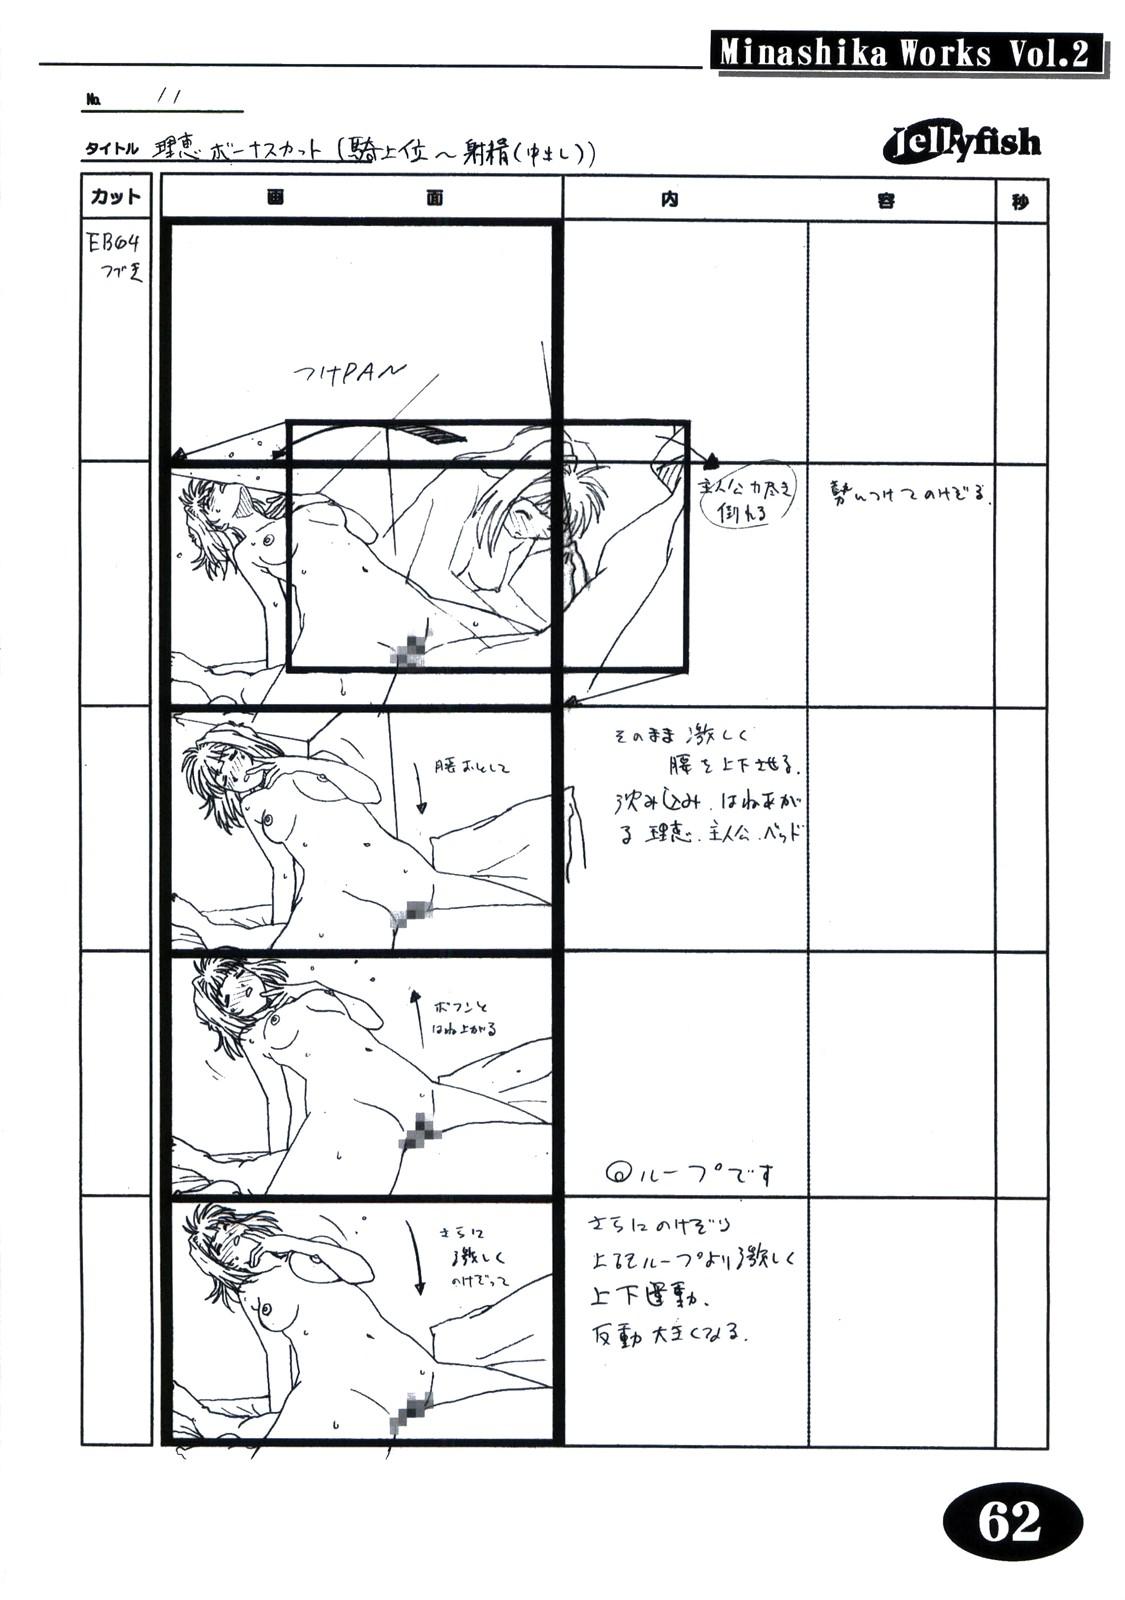 [Makino Jimusho (Taki Minashika)] Minasika Works Vol.2 "LOVERS ~Koi ni Ochitara...~" Ekonte-shuu 60